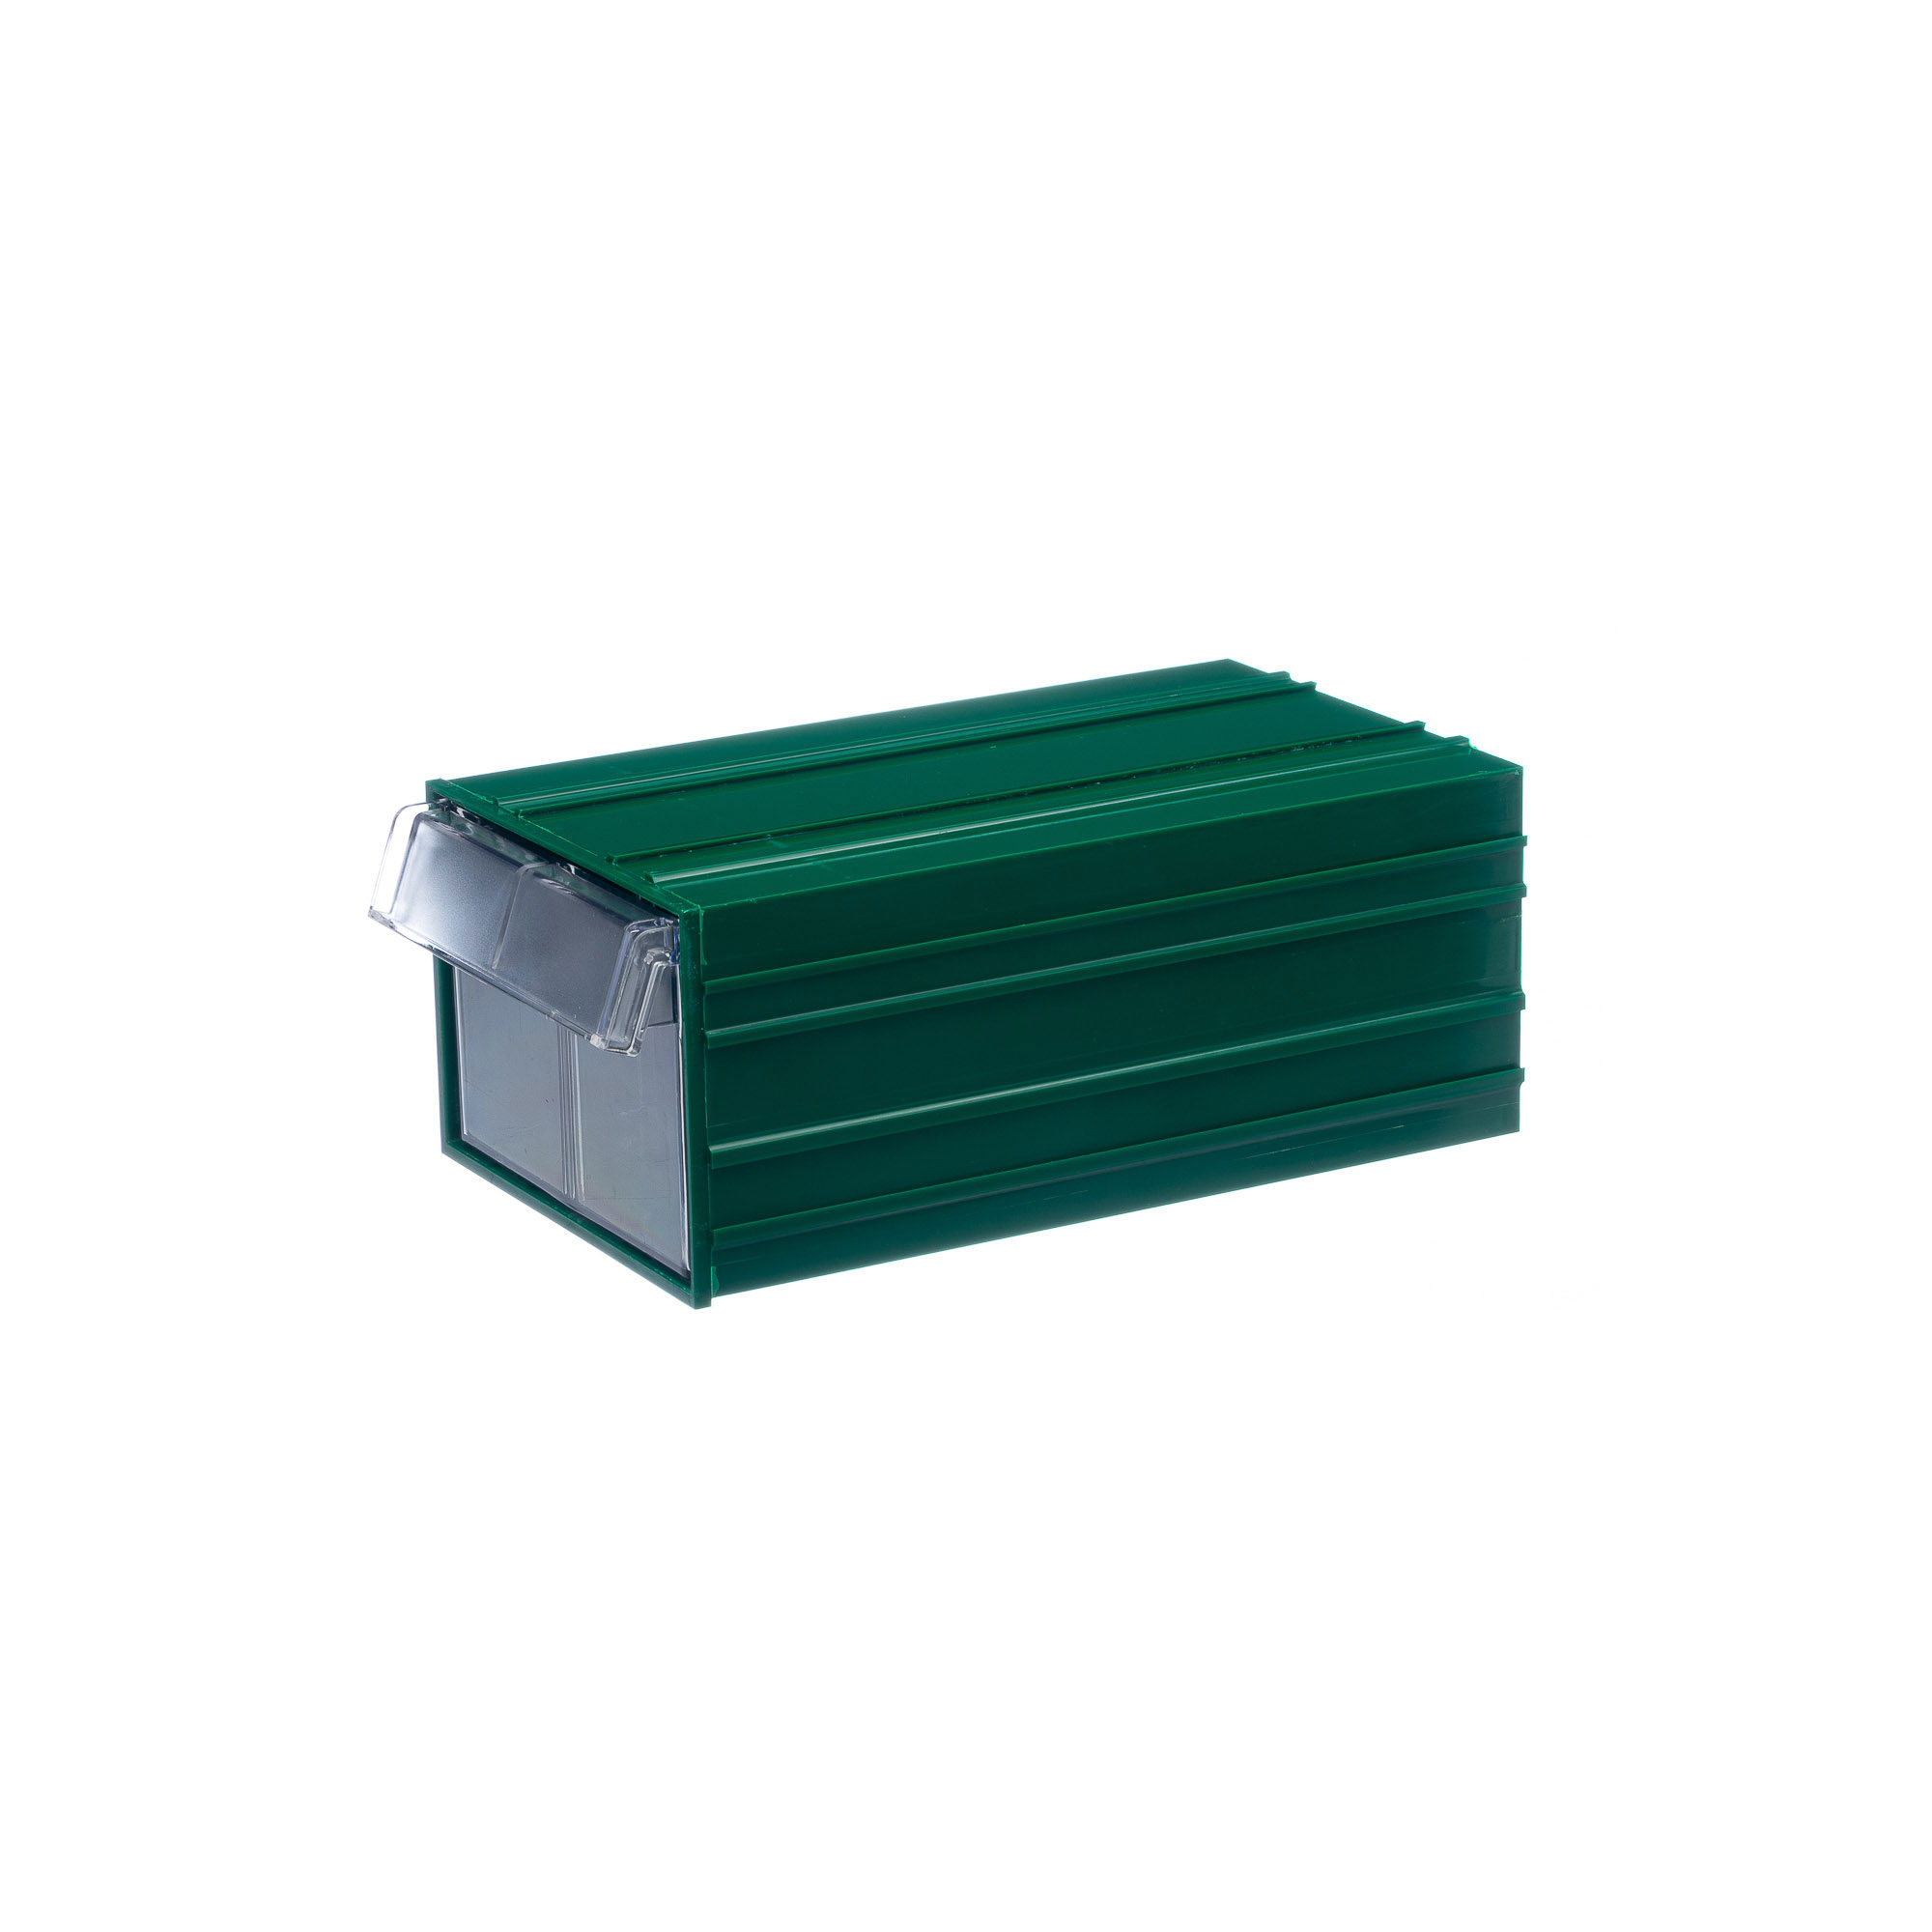 Пластиковый короб Стелла-техник С-2-зеленый-прозрачный 140х250х100мм пластиковый короб стелла техник с 2 зеленый прозрачный 140х250х100мм